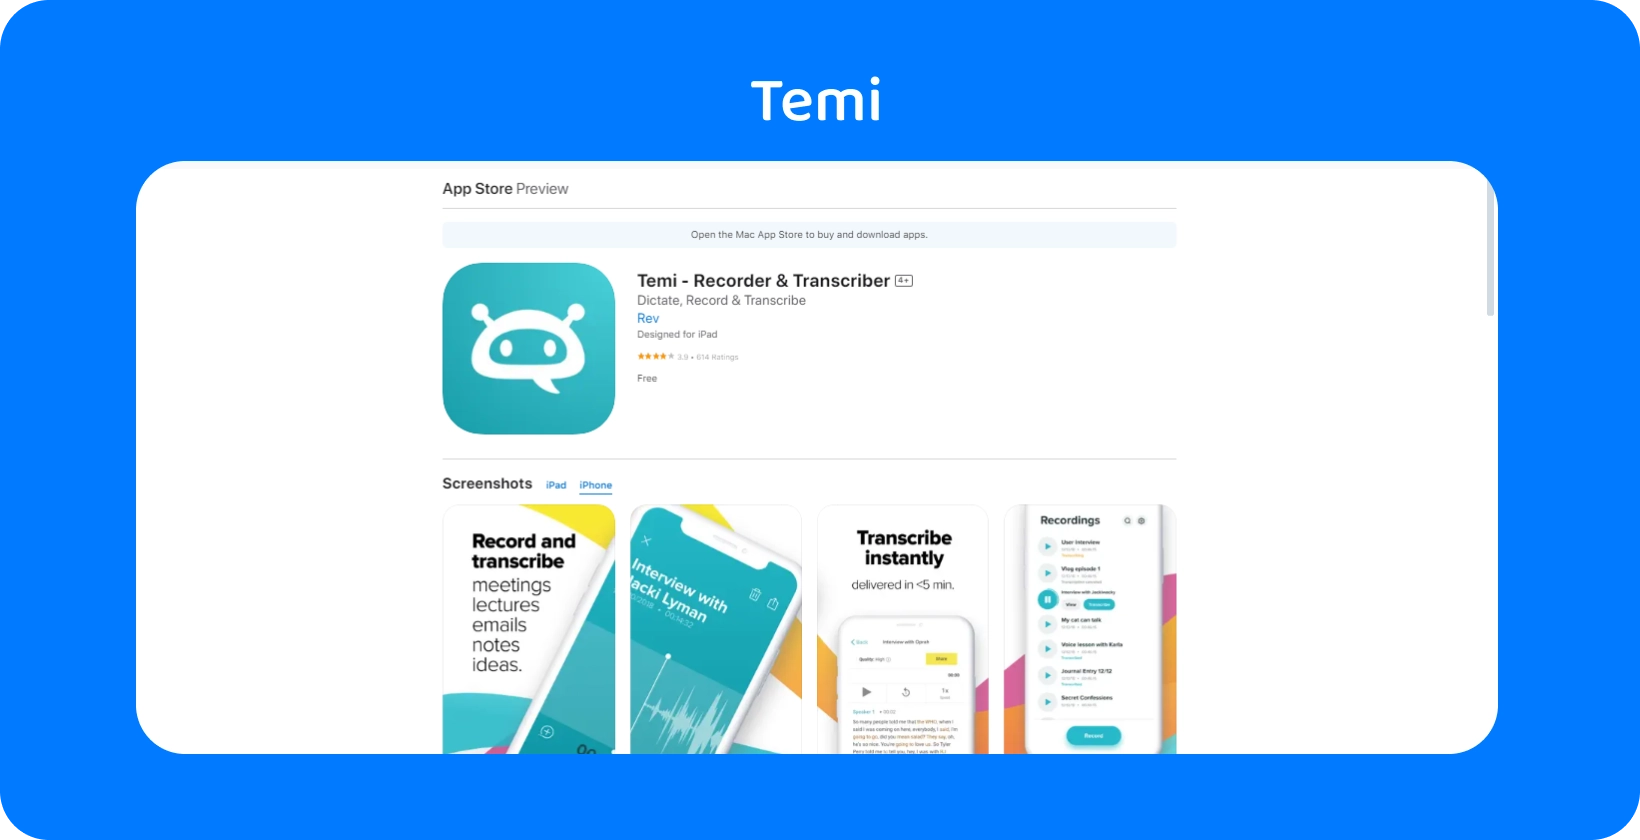 Képernyőkép Temi App Store listázásról, kiemelve annak gyors rögzítési és azonnali átírási funkcióit.